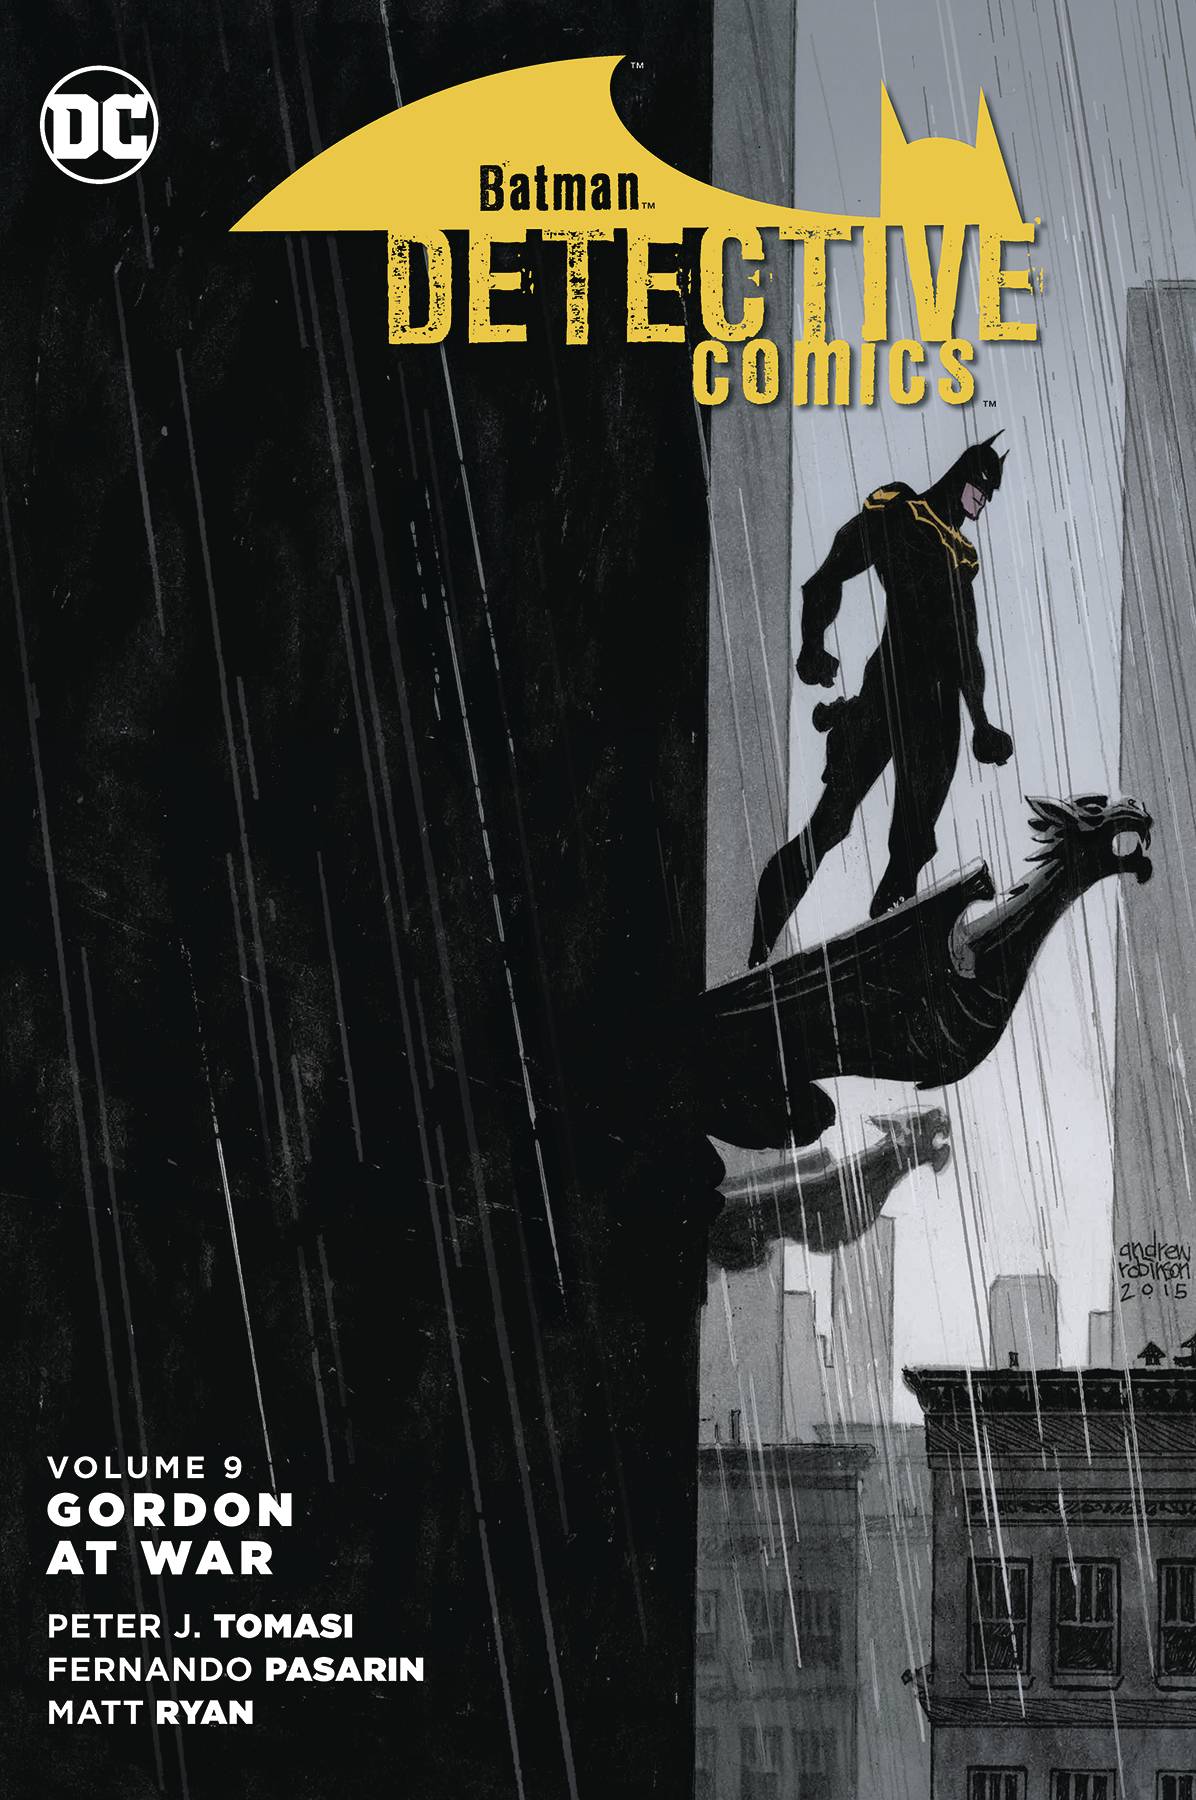 Batman Detective Comics Graphic Novel Volume 9 Gordon At War